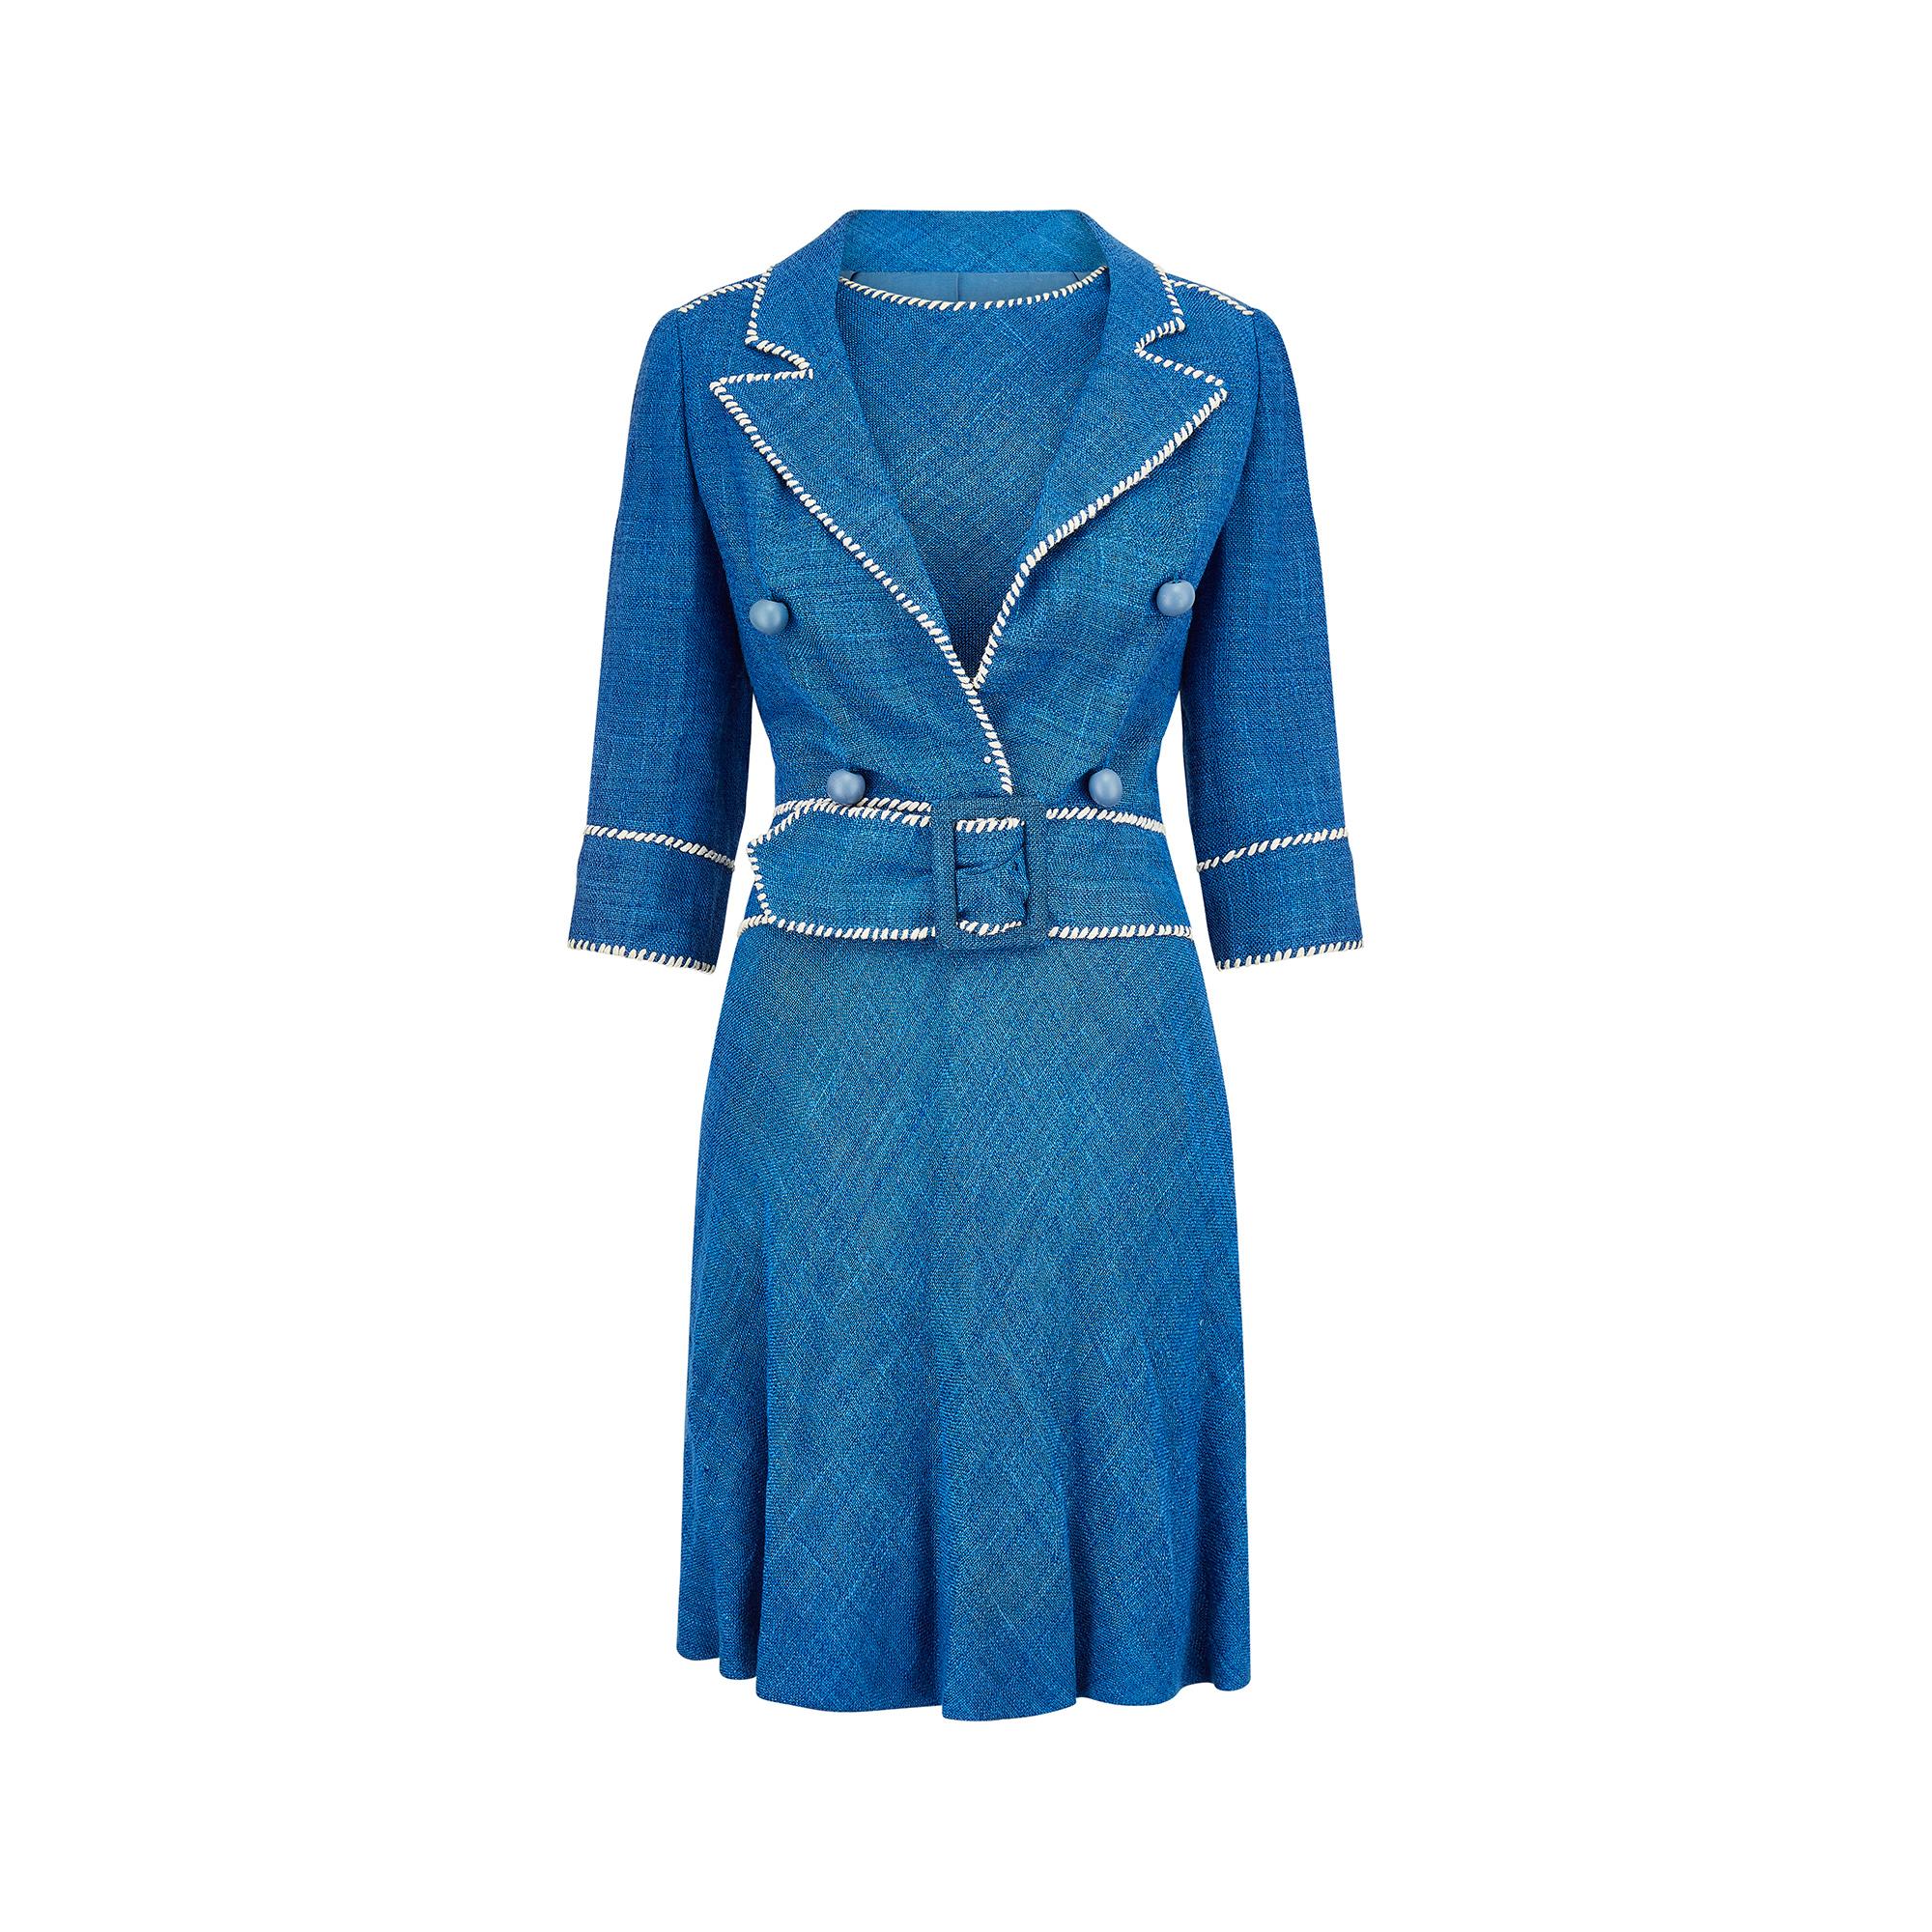 Costume français haute couture Jacques Esterel du milieu des années 1950.  Un mélange de soie et de lin bleu français texturé et ample, avec une surpiqûre blanche frappante qui met en valeur l'encolure, les emmanchures de la robe, la taille et les